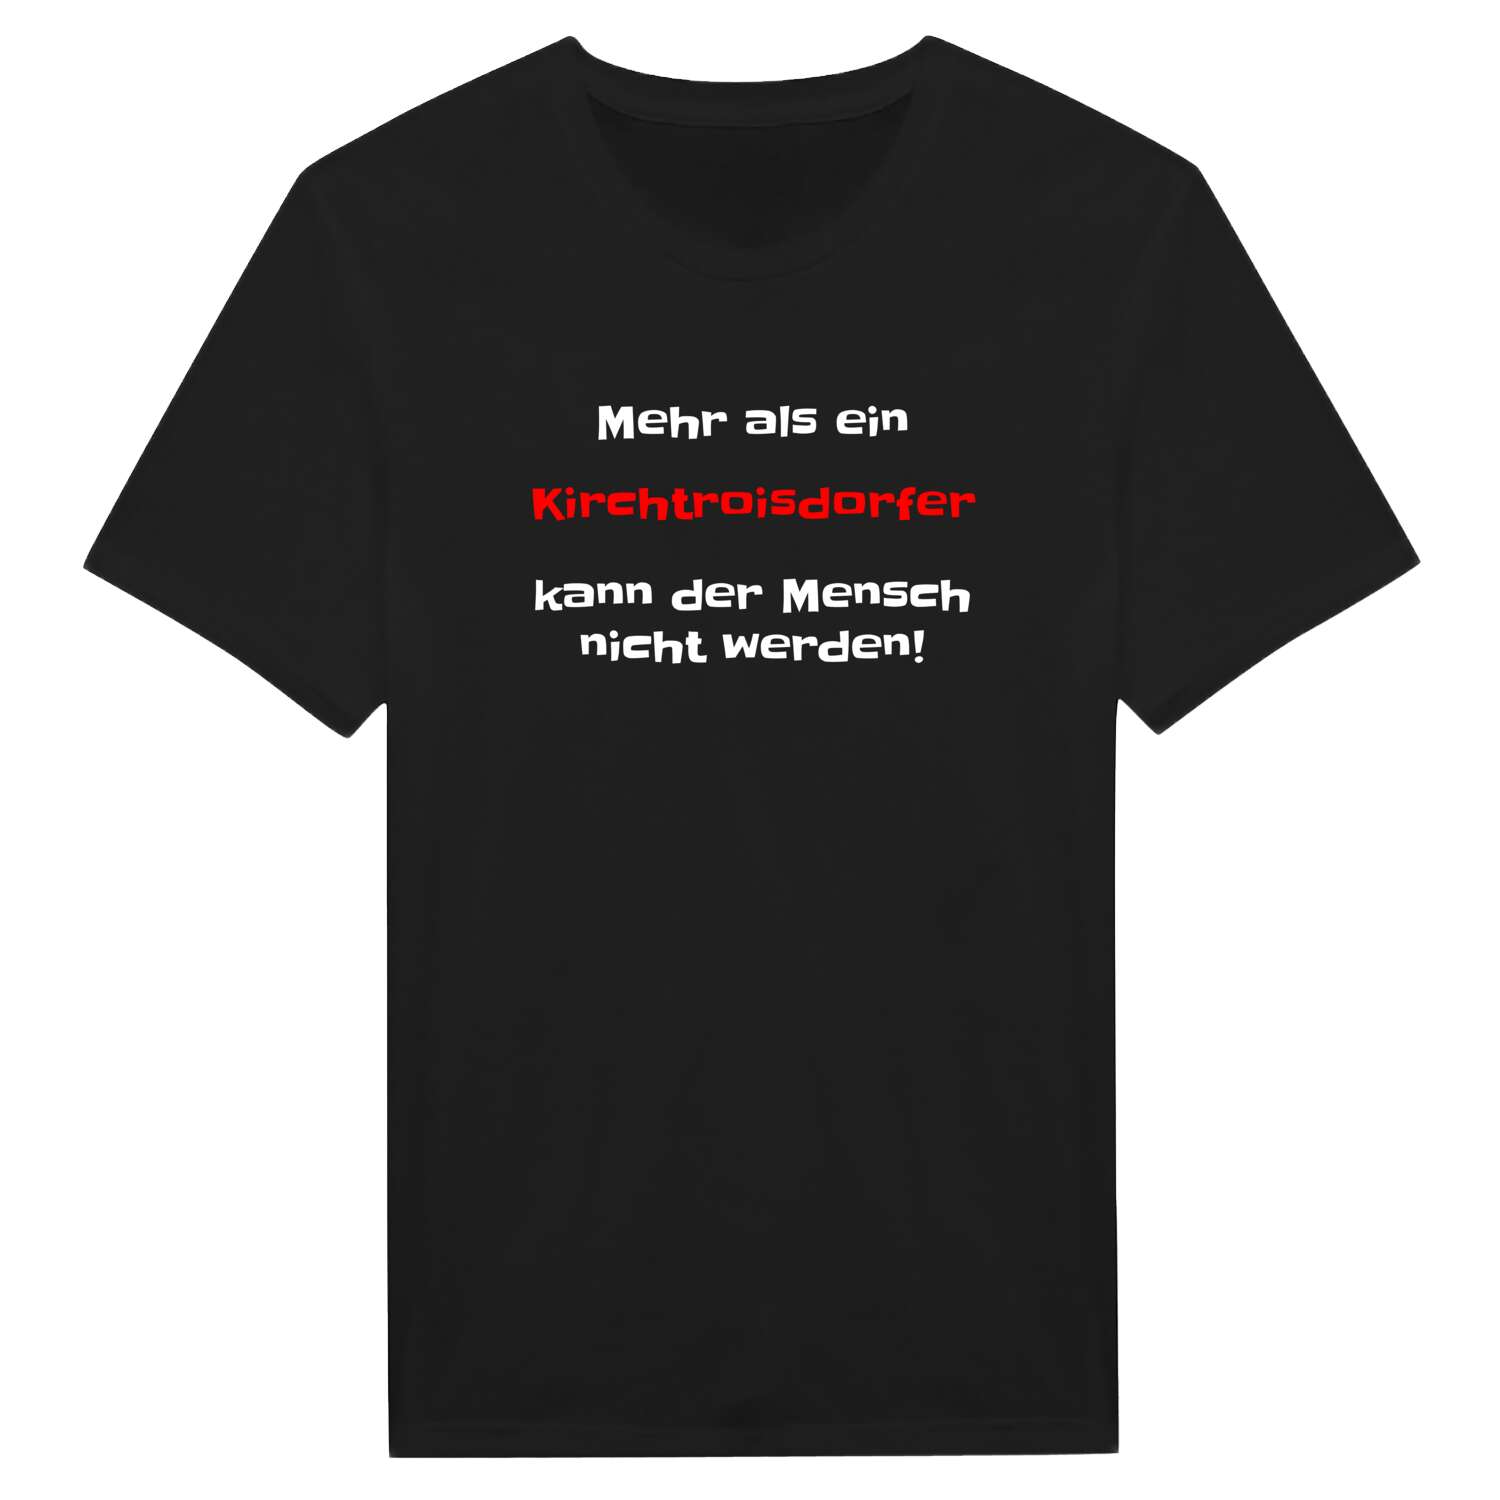 Kirchtroisdorf T-Shirt »Mehr als ein«